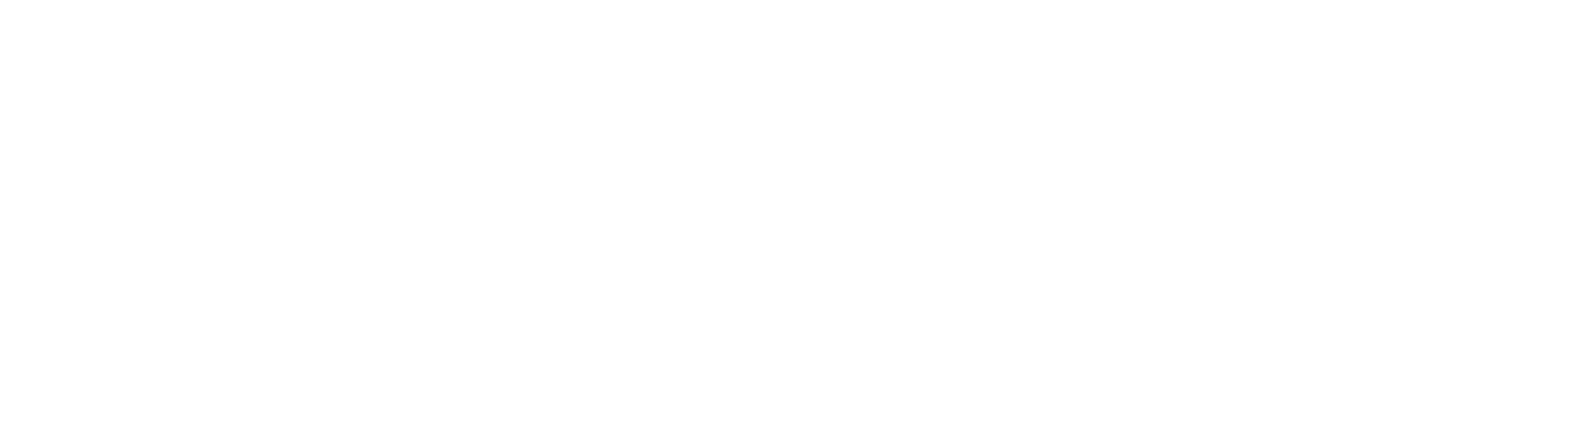 Alcon logo grand pour les fonds sombres (PNG transparent)